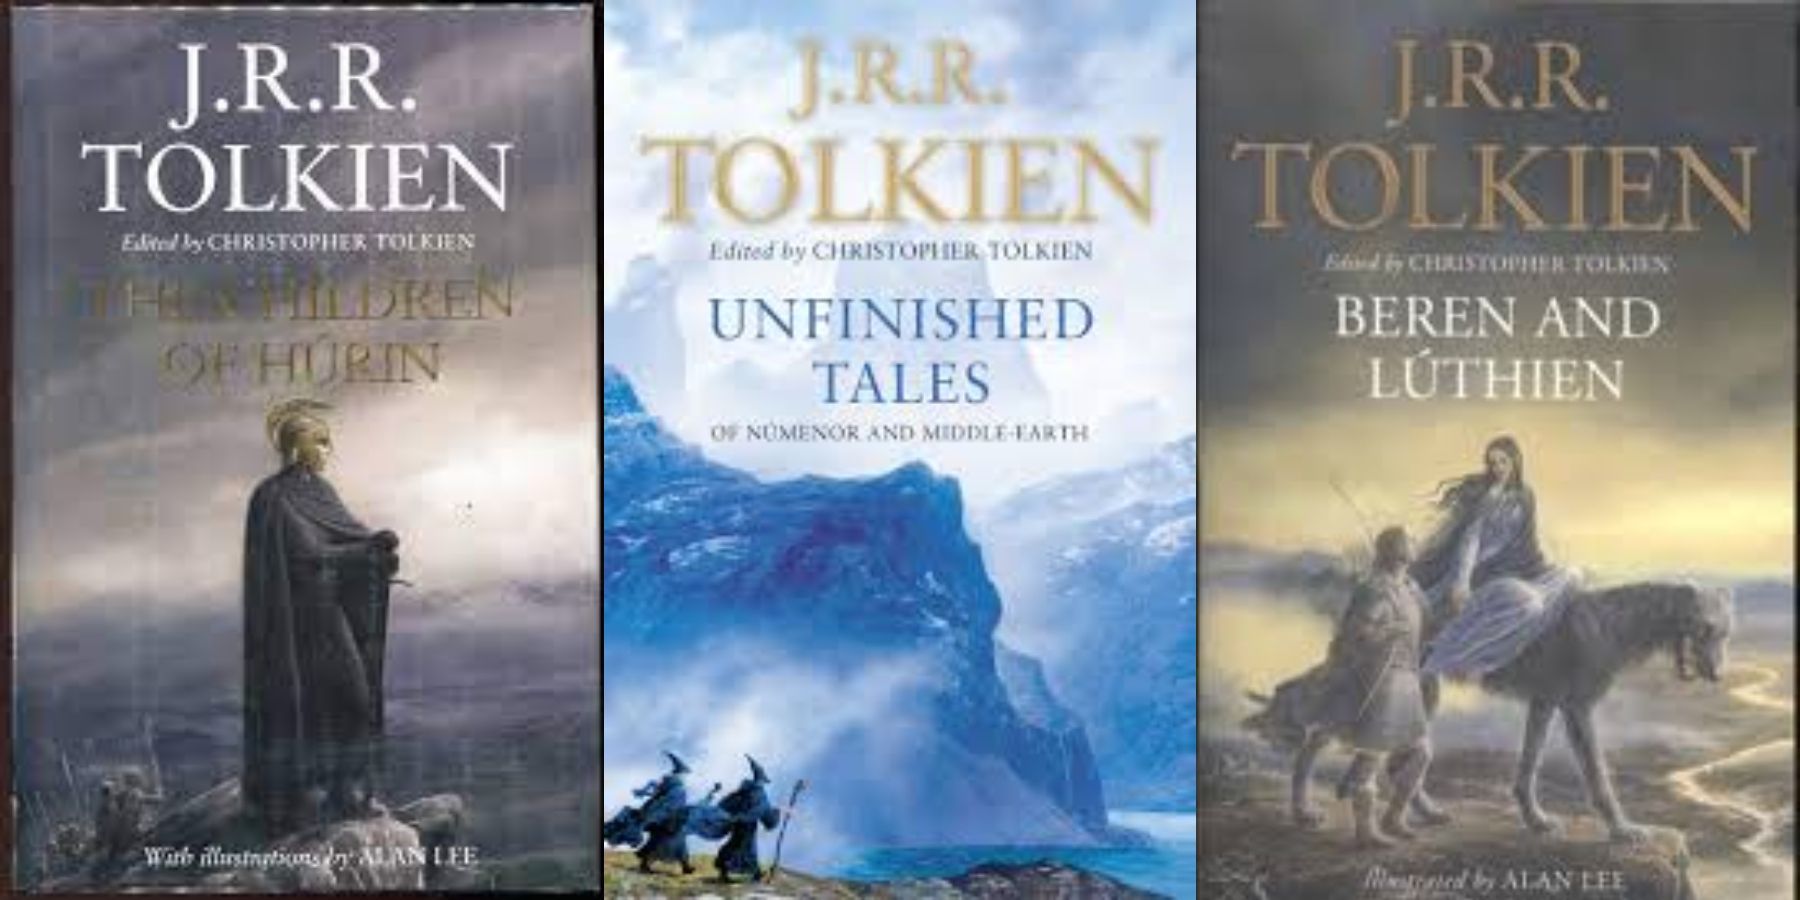 Tolkien books